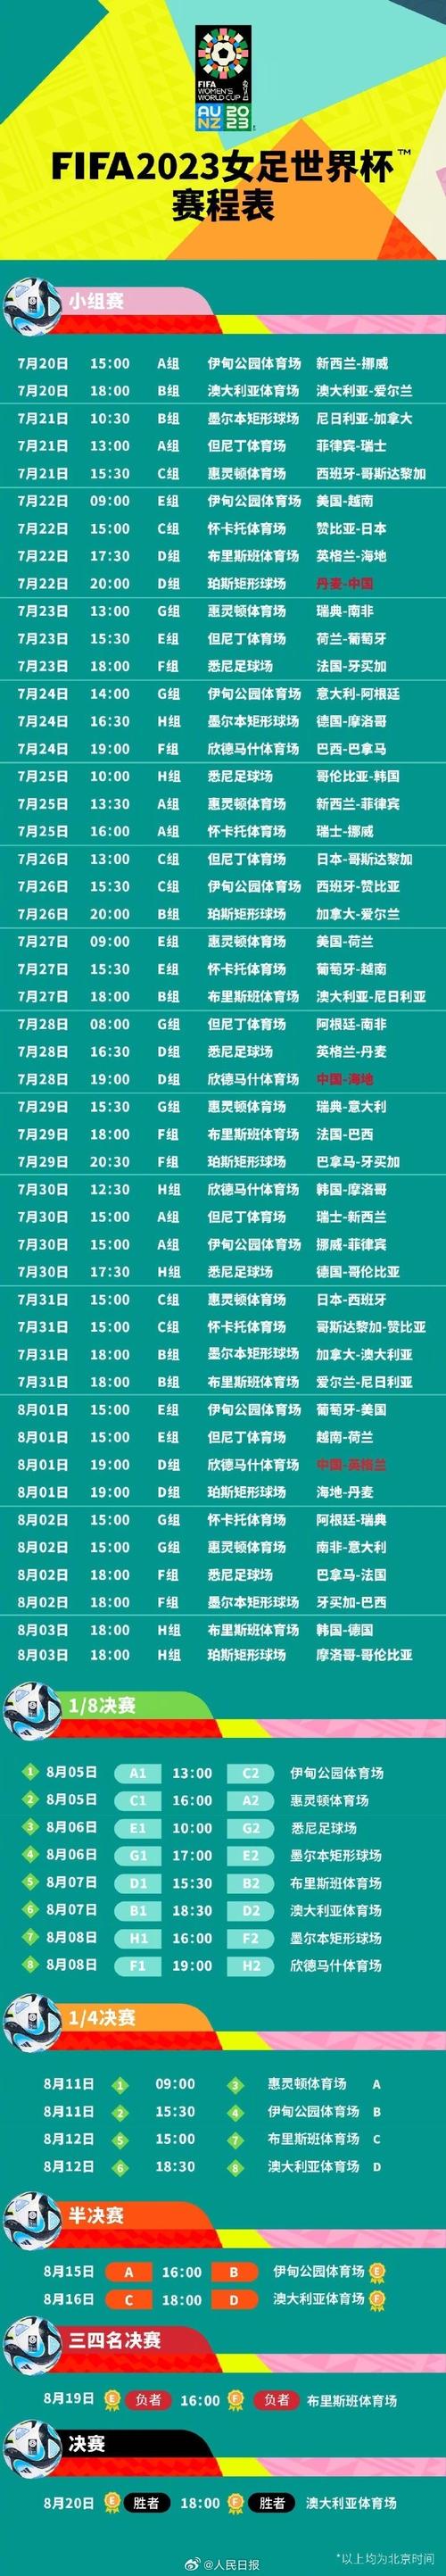 世界杯赛程时间表中国